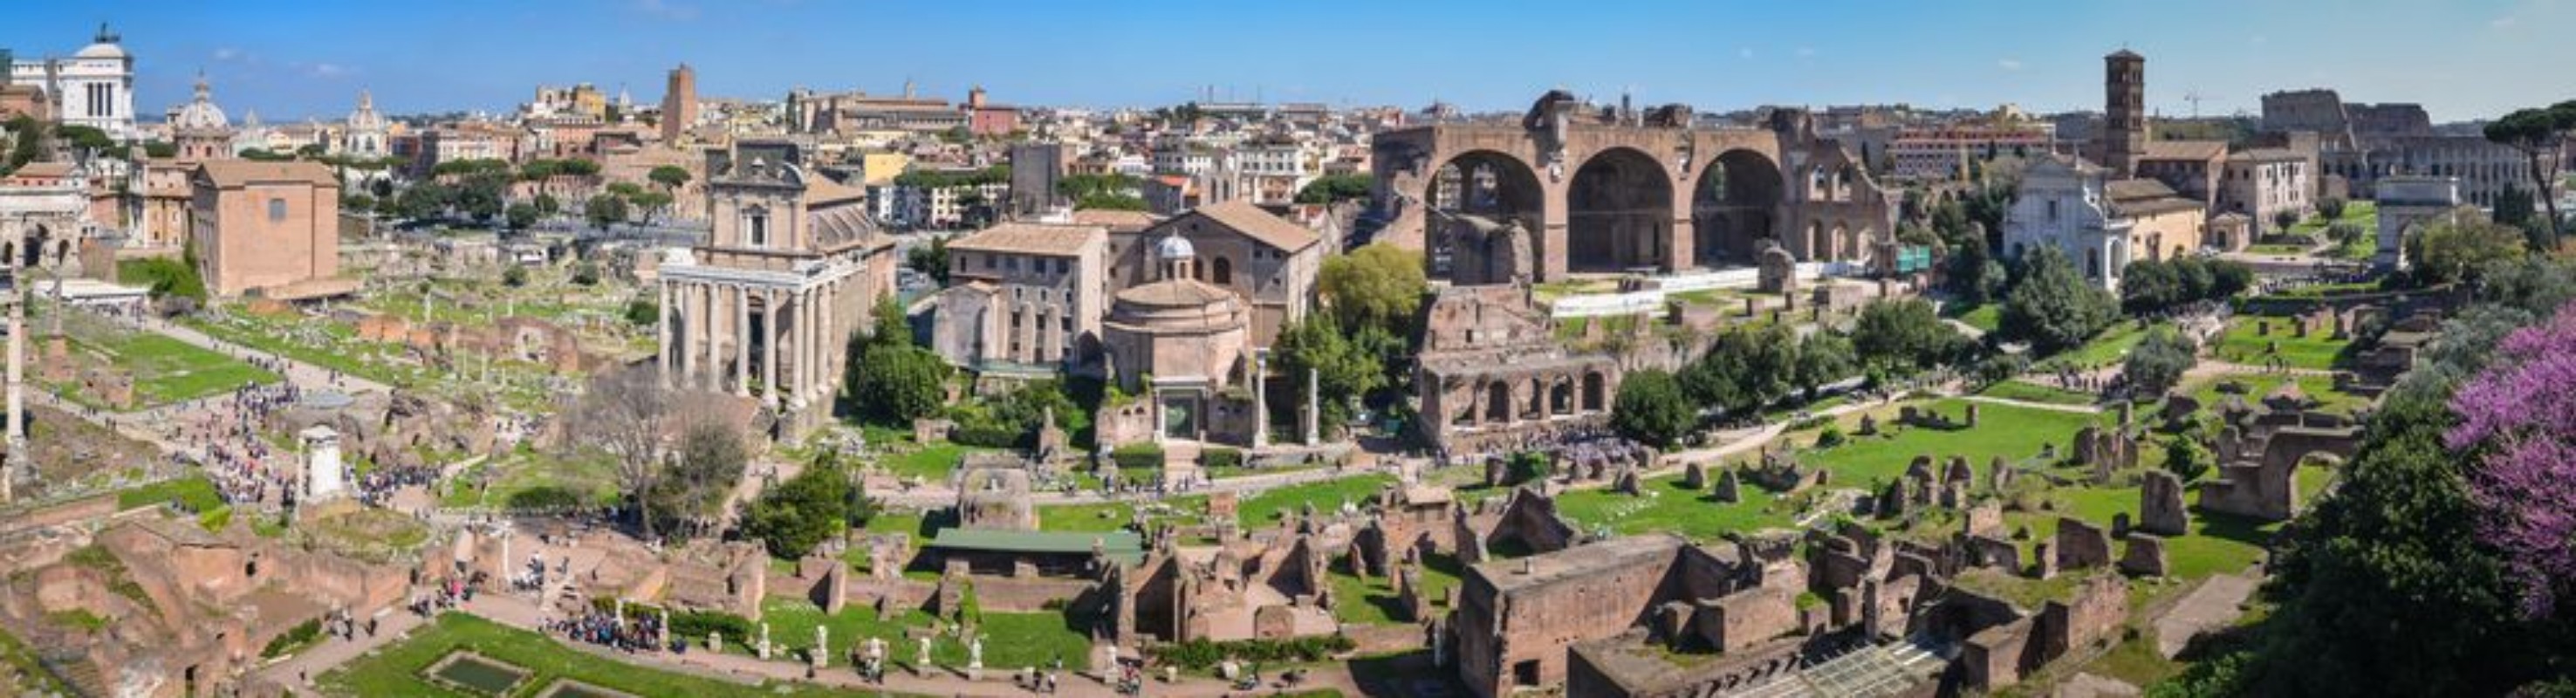 Picture of Forum Romanum - panorama